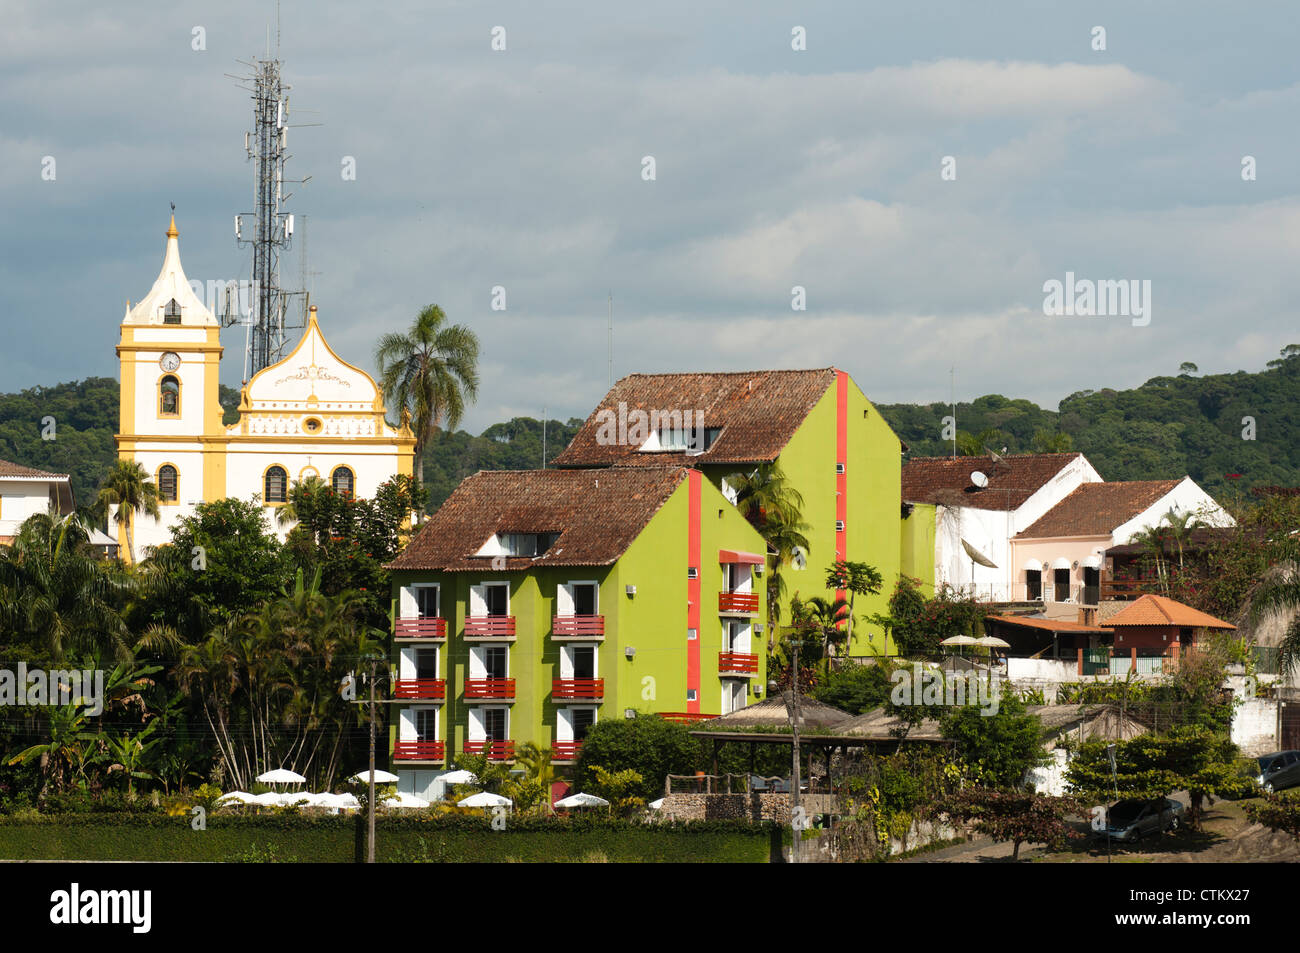 City of Antonina, Paraná, south Brazil. Stock Photo